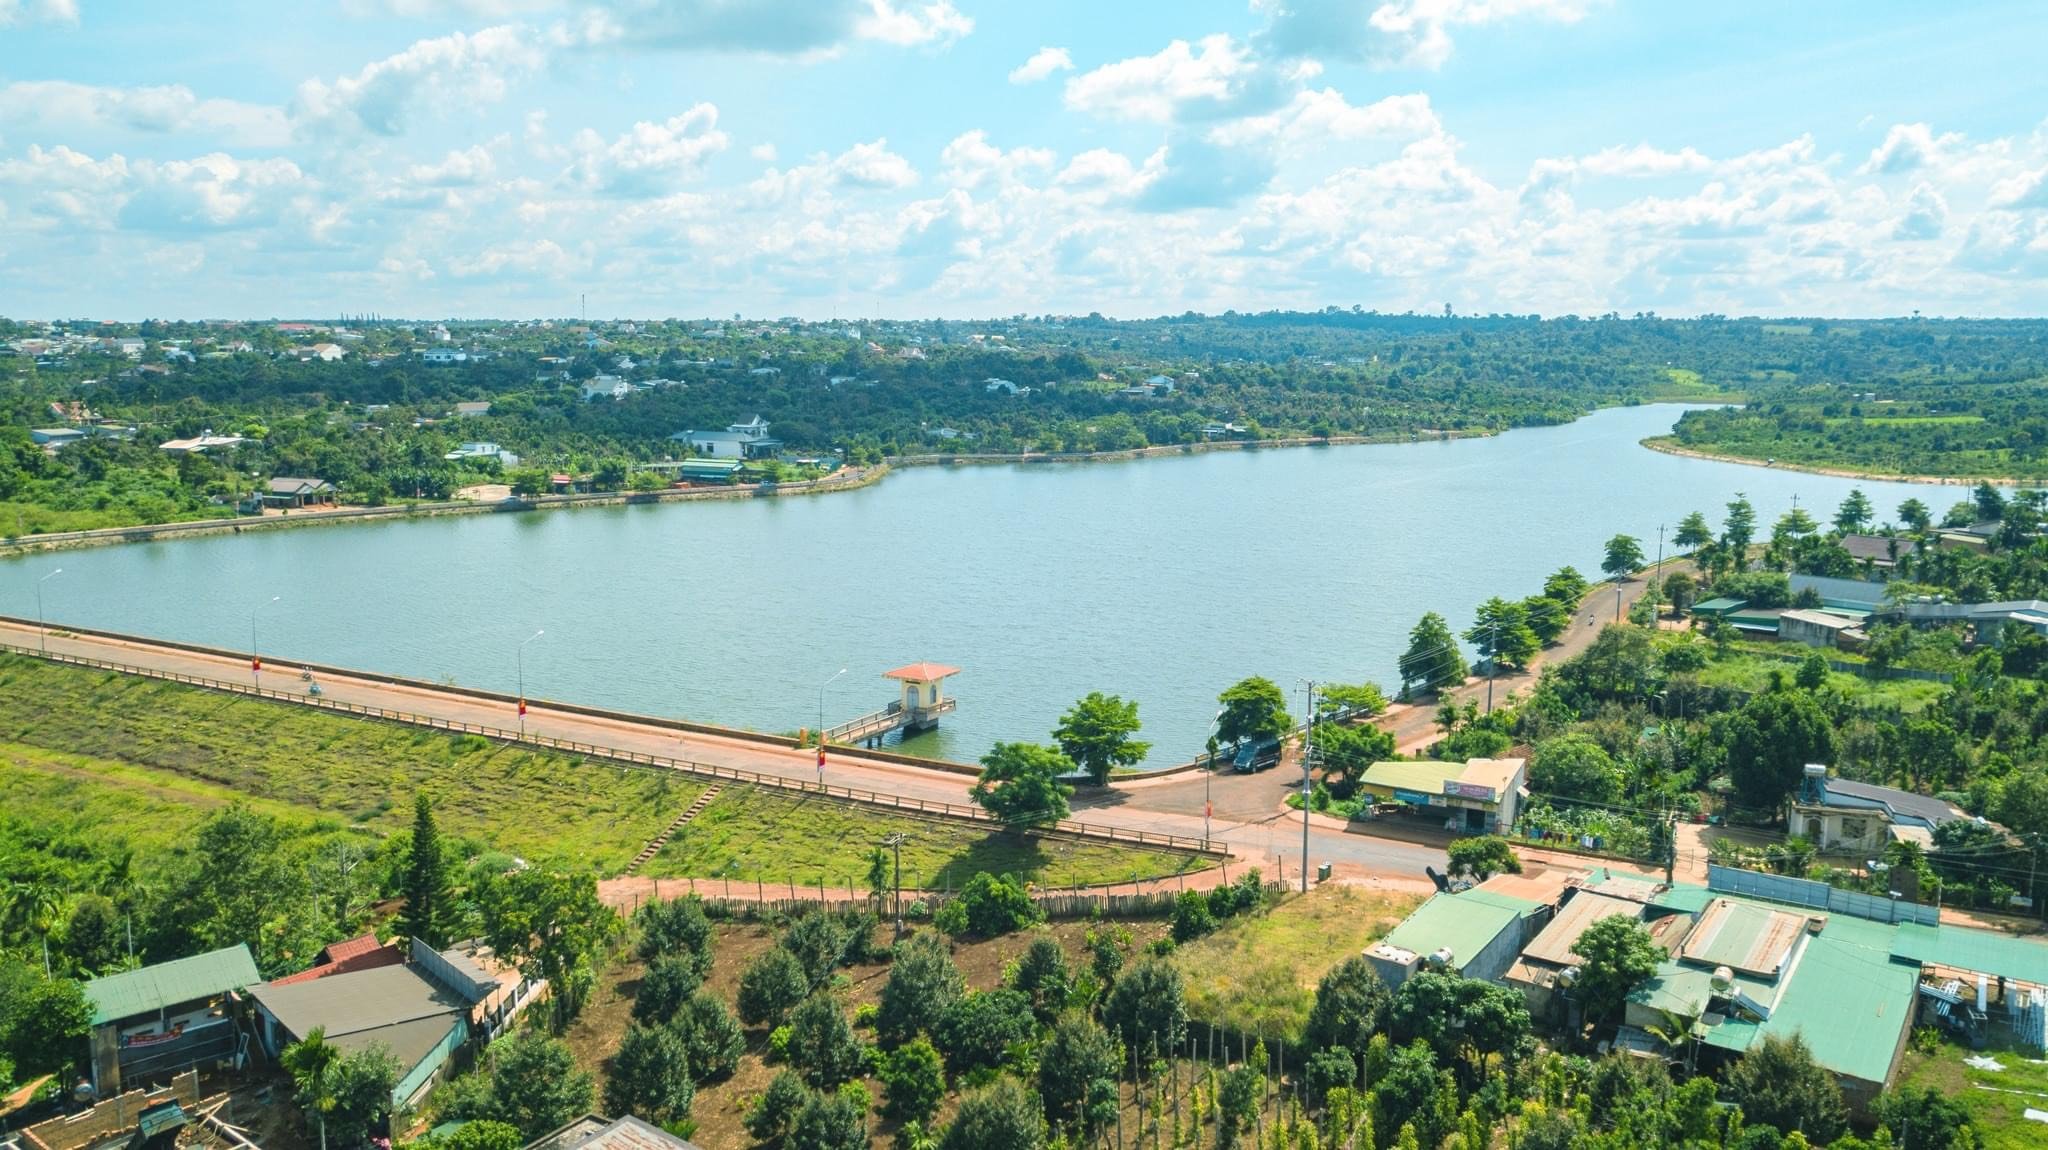 #1 Đất nền Khu dân cư Phú Lộc ĐakLak - Trung tâm hành chính mới, Hồ sinh thái Phú Lộc